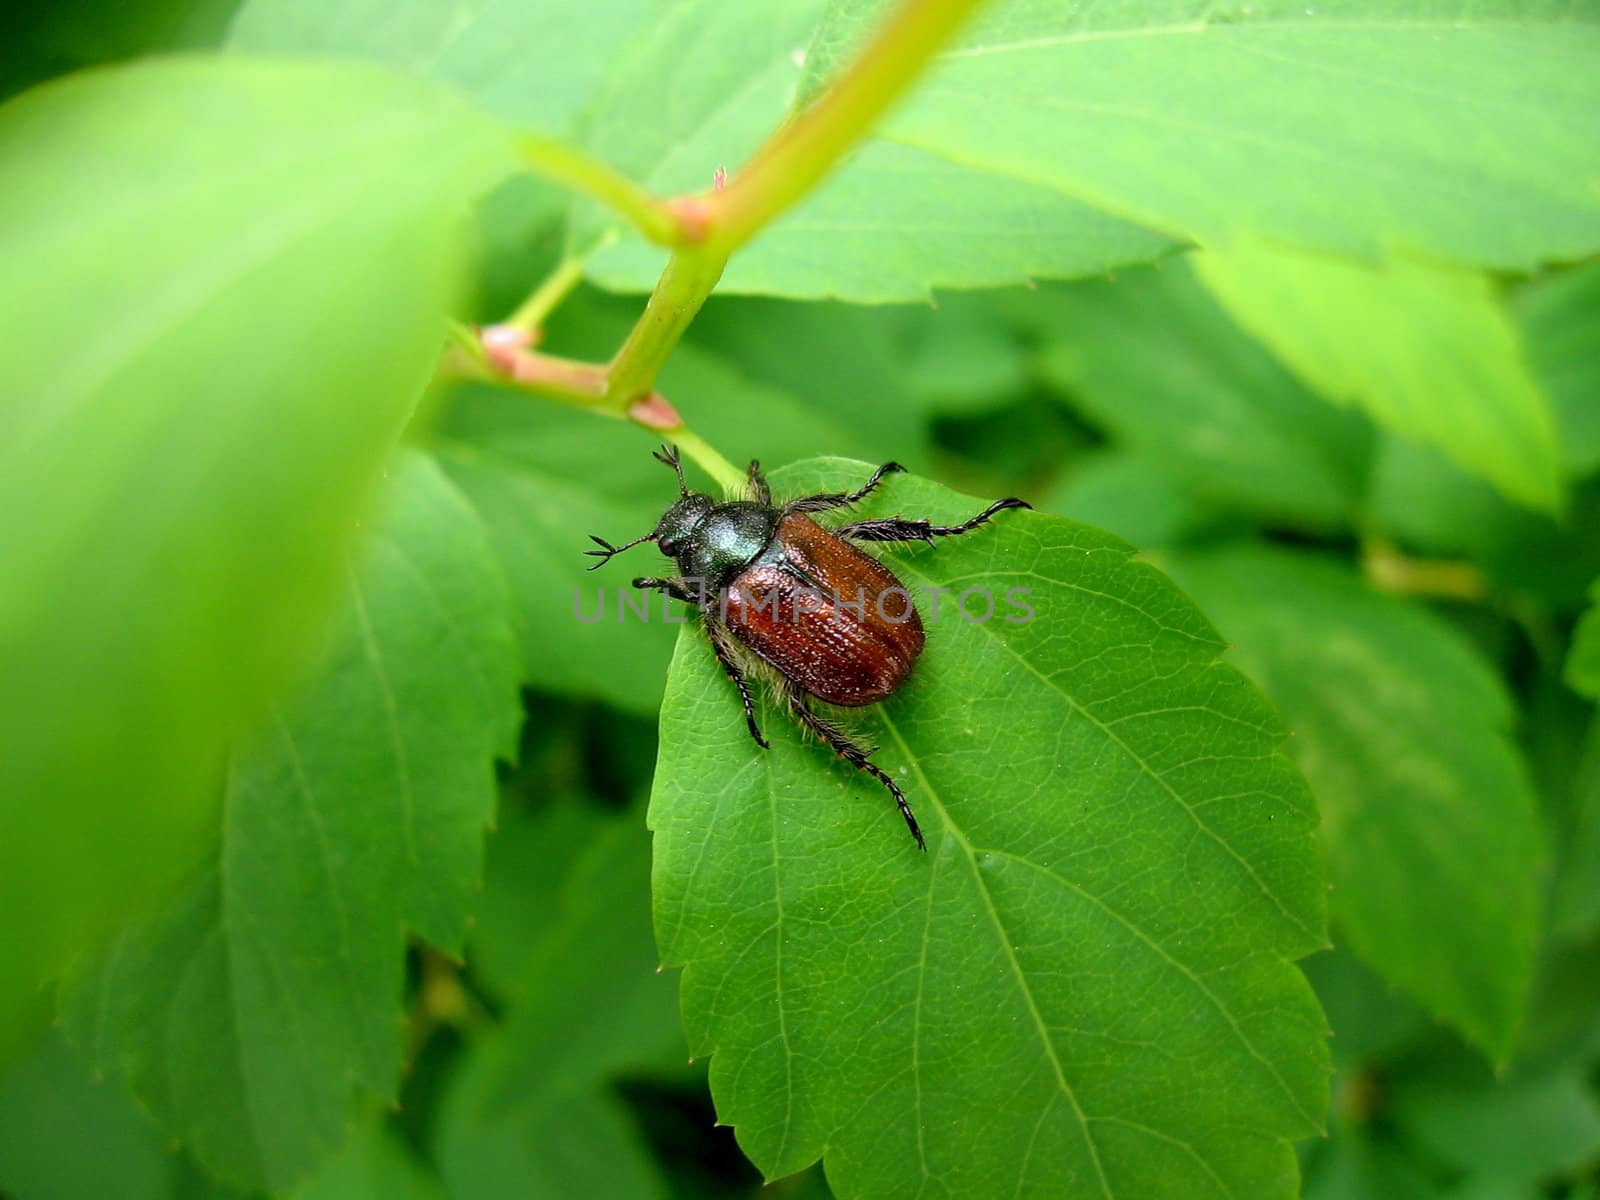 Maybug on leaf by tomatto